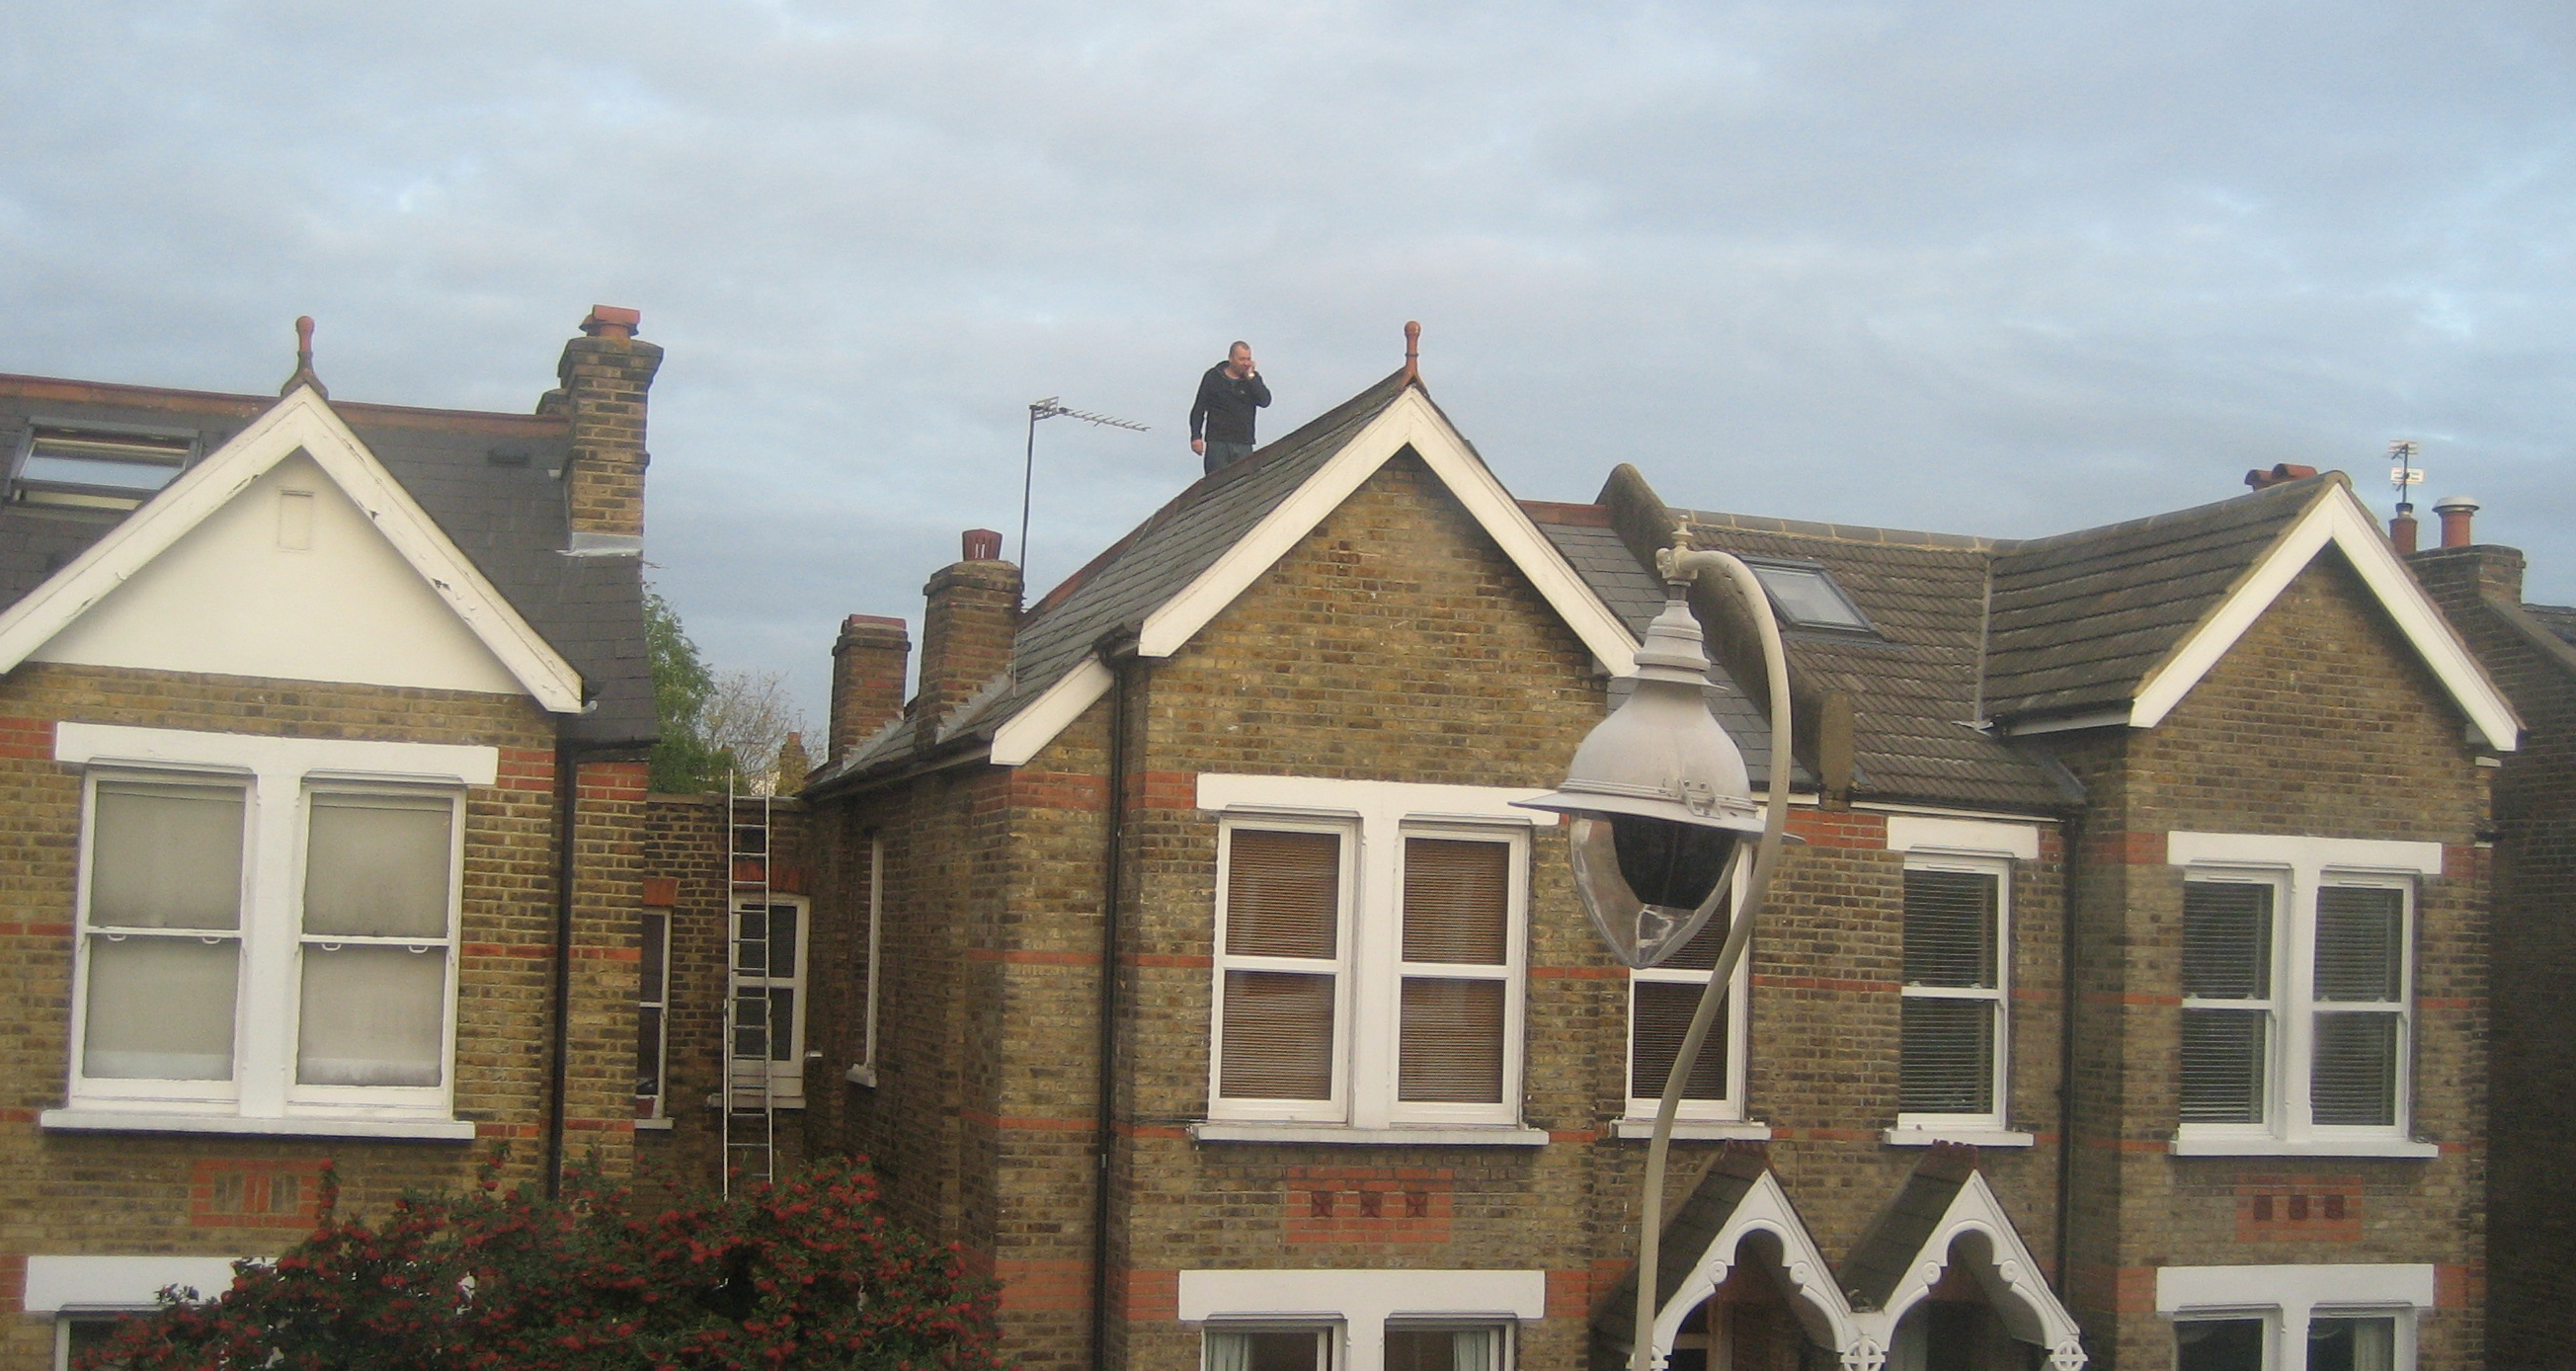 Man on the roof opposite LPR